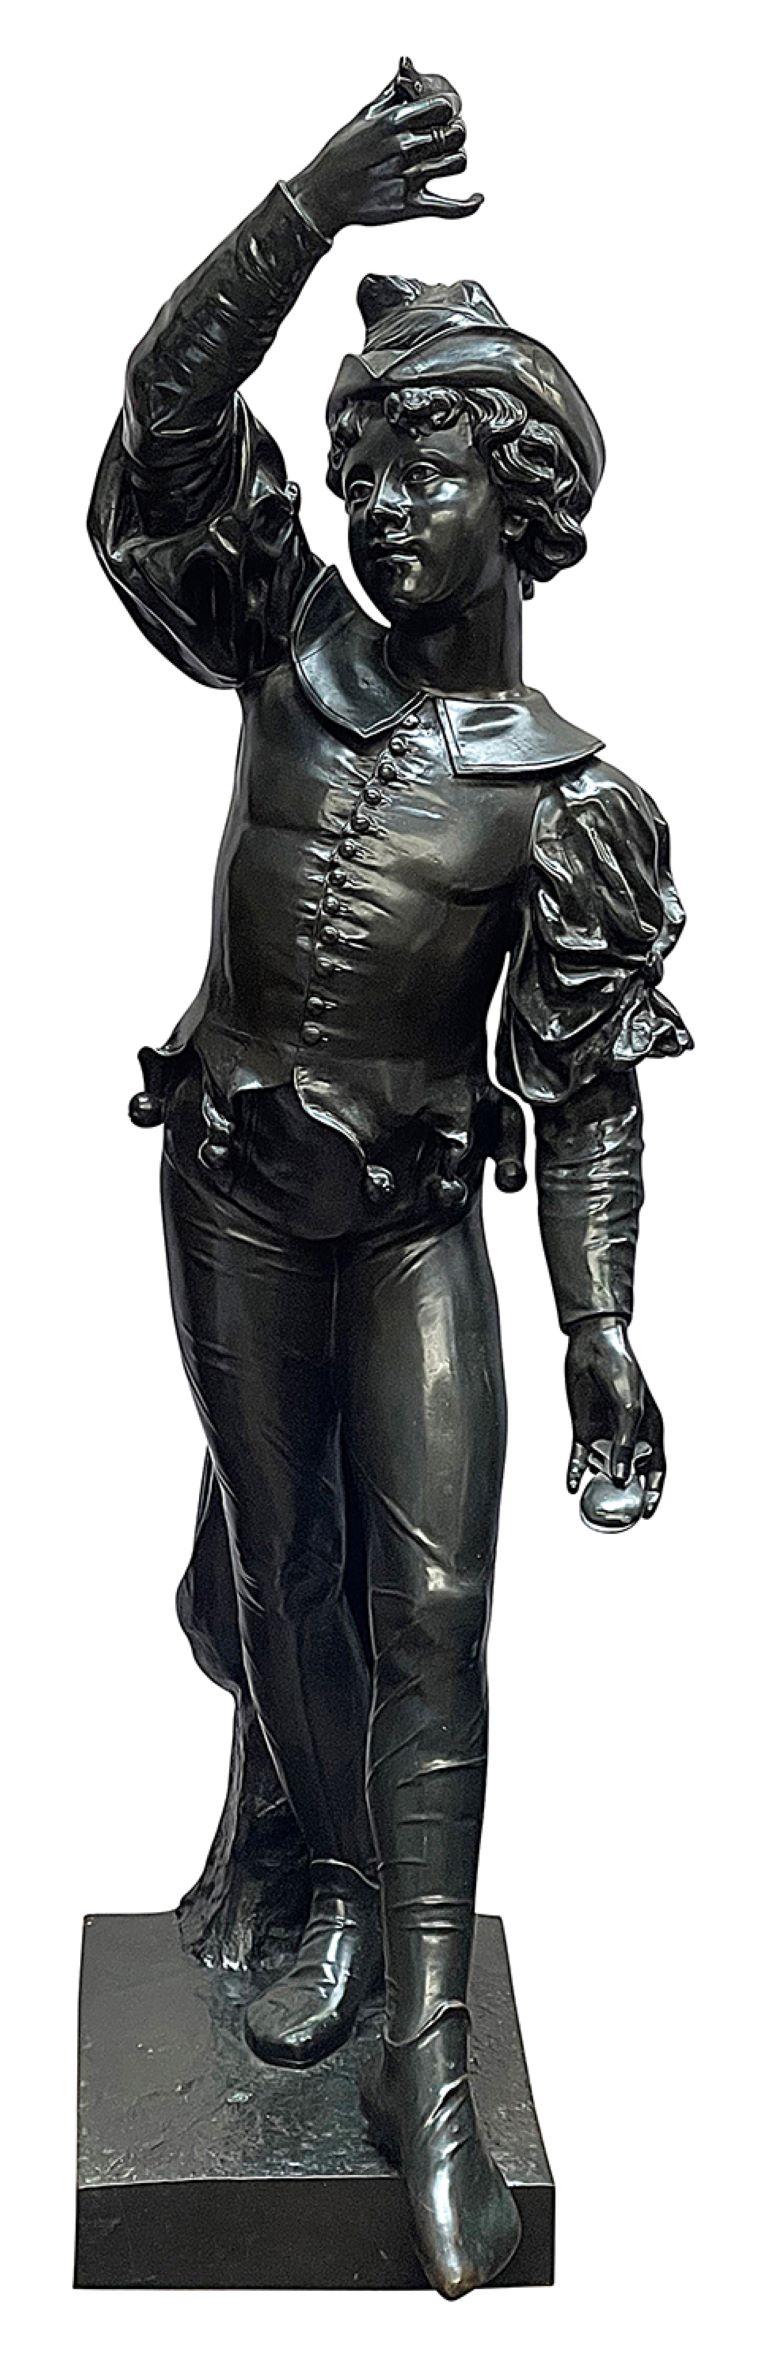 Une statue en bronze patiné du XIXe siècle représentant un bouffon de cour, signée A. Bolle, est merveilleusement impressionnante et amusante.
Lot 73 CZZK  60825